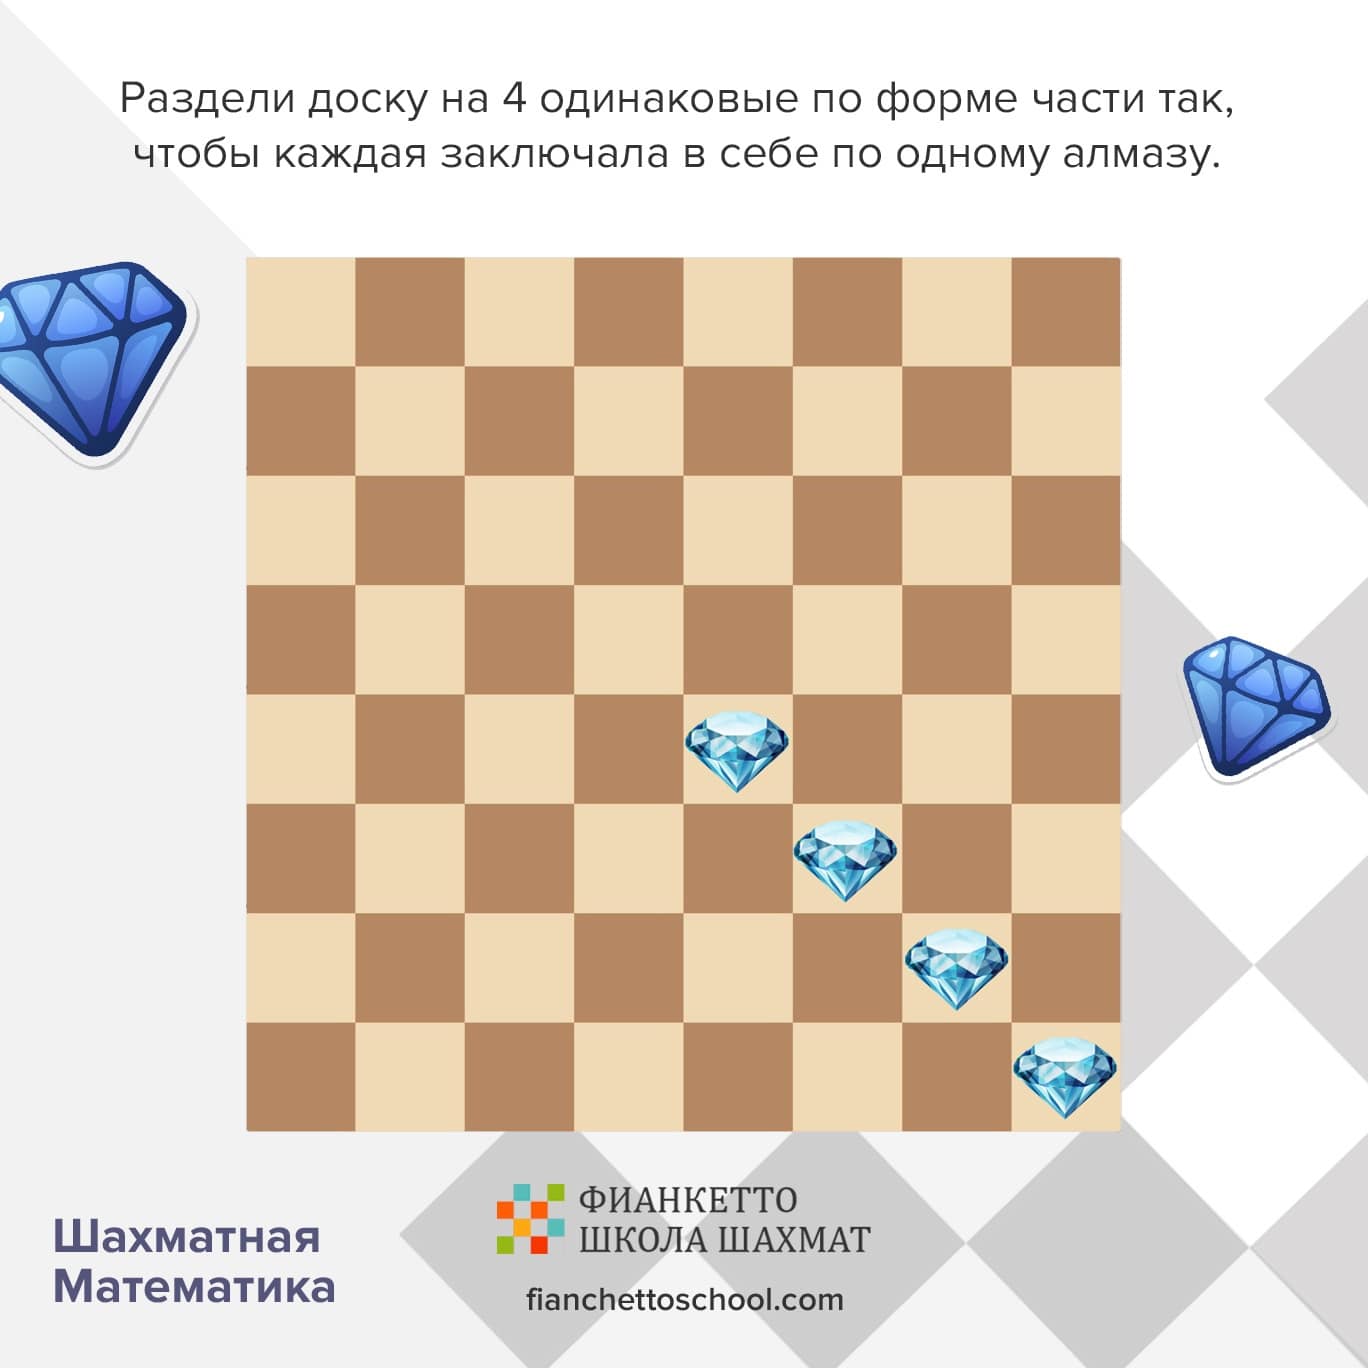 Примеры задач по шахматной математике в шахматной школе для детей Фианкетто